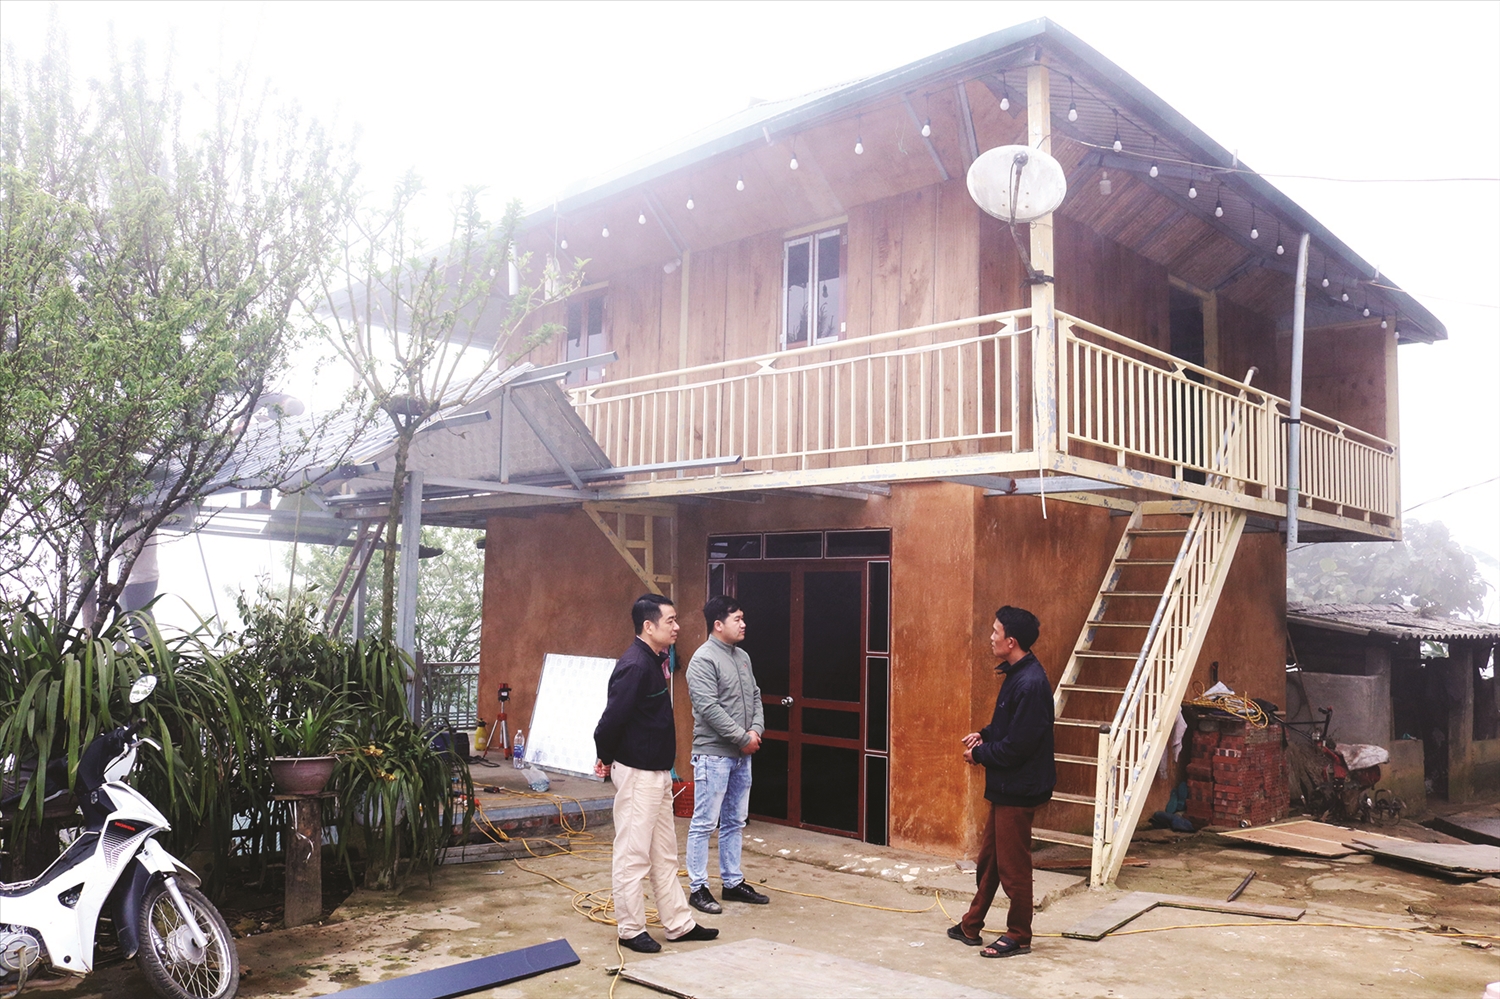 Anh Sần Hờ Lù, Bí thư Chi bộ thôn Choản Thèn (người bên phải ảnh) giới thiệu về Homestay của gia đình đang được hoàn thiện.